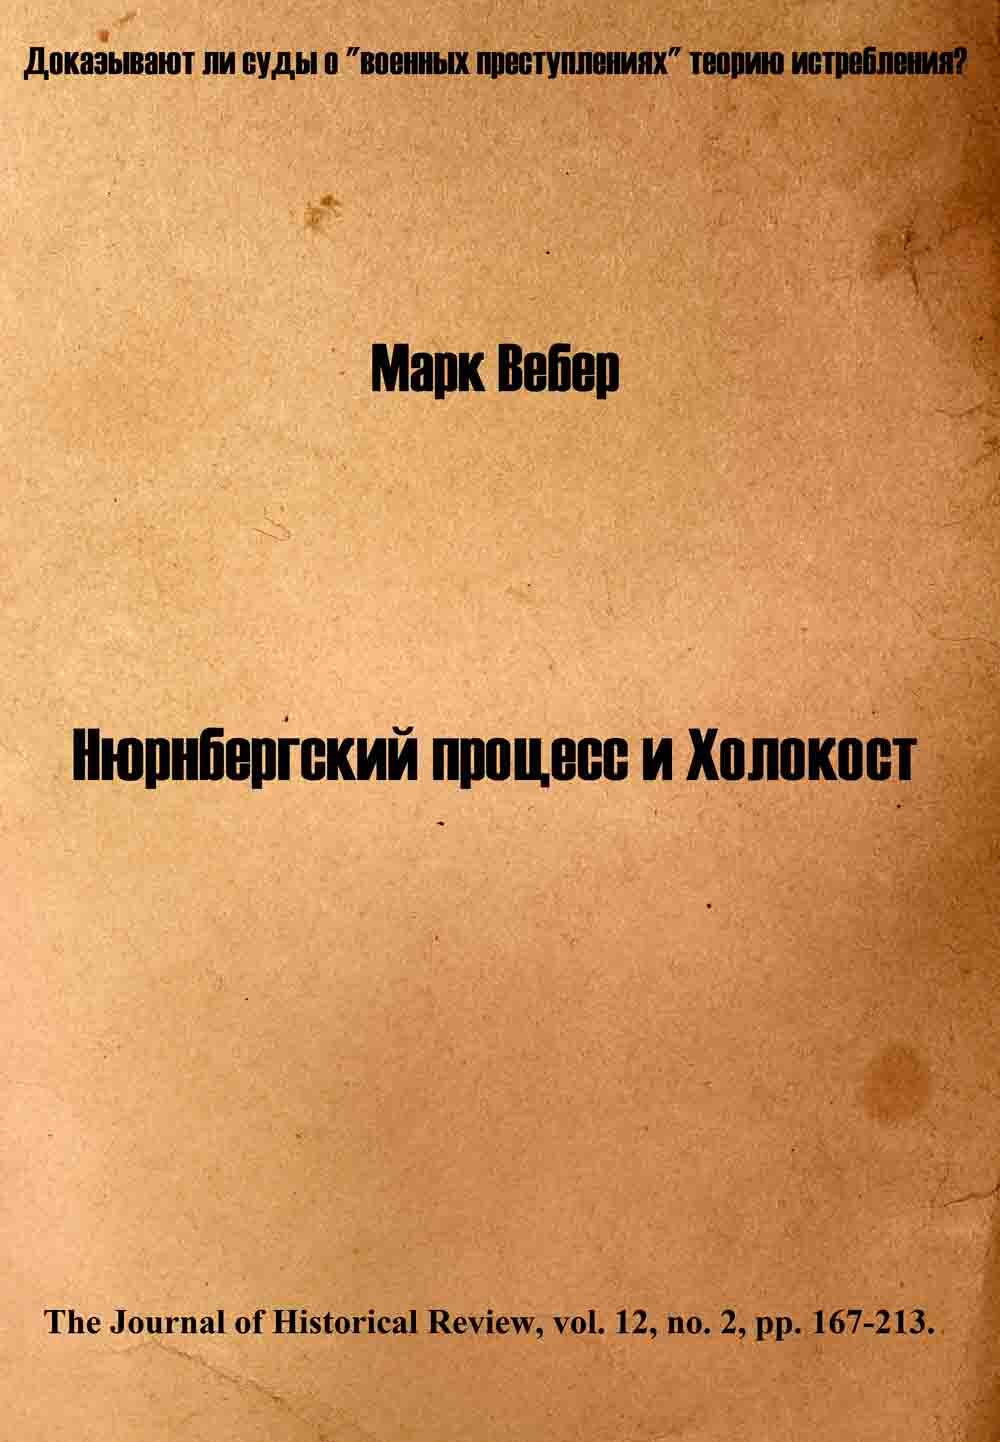 ru en С Англинов Олексій Токар FictionBook Editor Release 26 16 February 2012 - фото 1